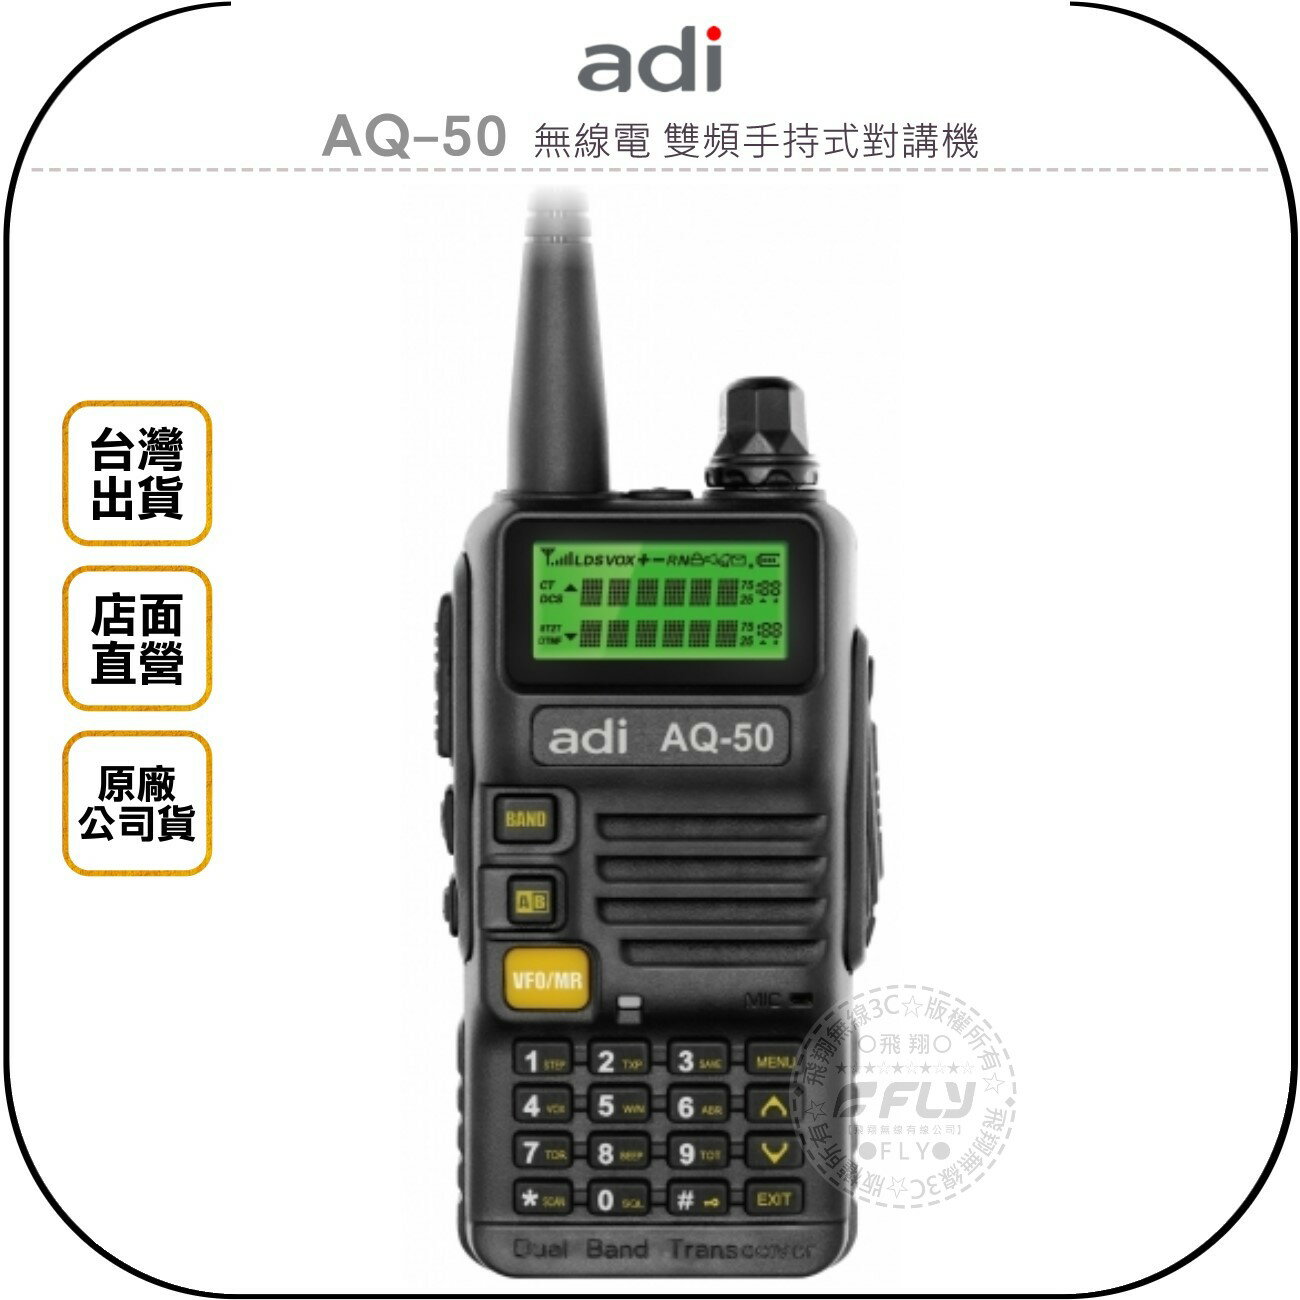 《飛翔無線3C》ADI AQ-50 無線電 雙頻手持式對講機￨公司貨￨大功率 雙顯示 跟車通話 登山露營 工作聯繫